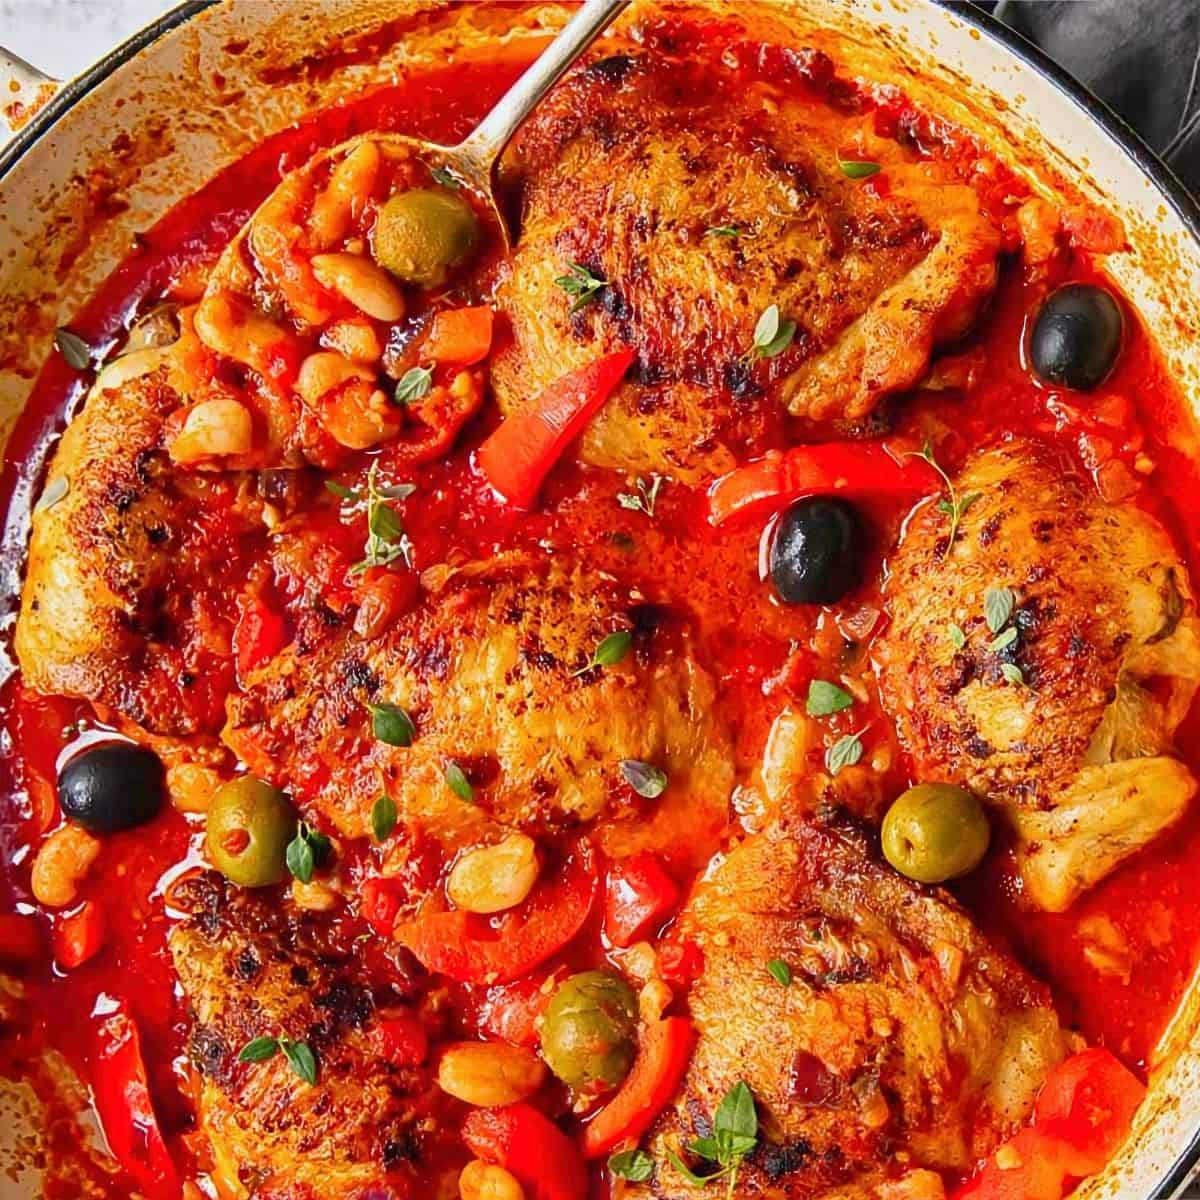 2. Spanish Chicken in Bravas Sauce - Spanish recipe for chicken